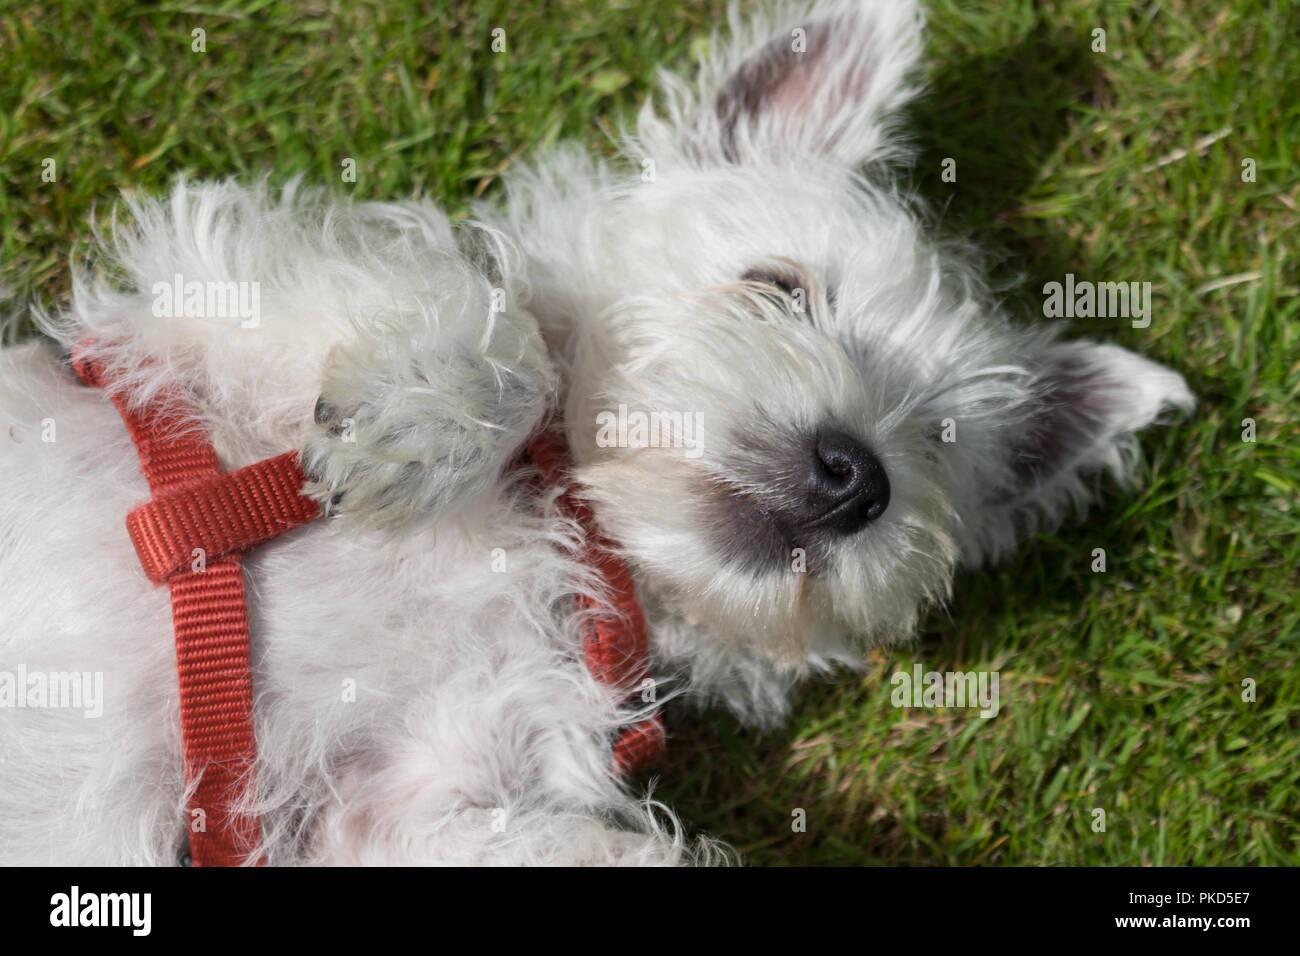 West Highland White Terrier, allgemein als ein Westie bekannt. Auf dem Rücken liegend im Gras mit einem roten Kabelbaum. Stockfoto